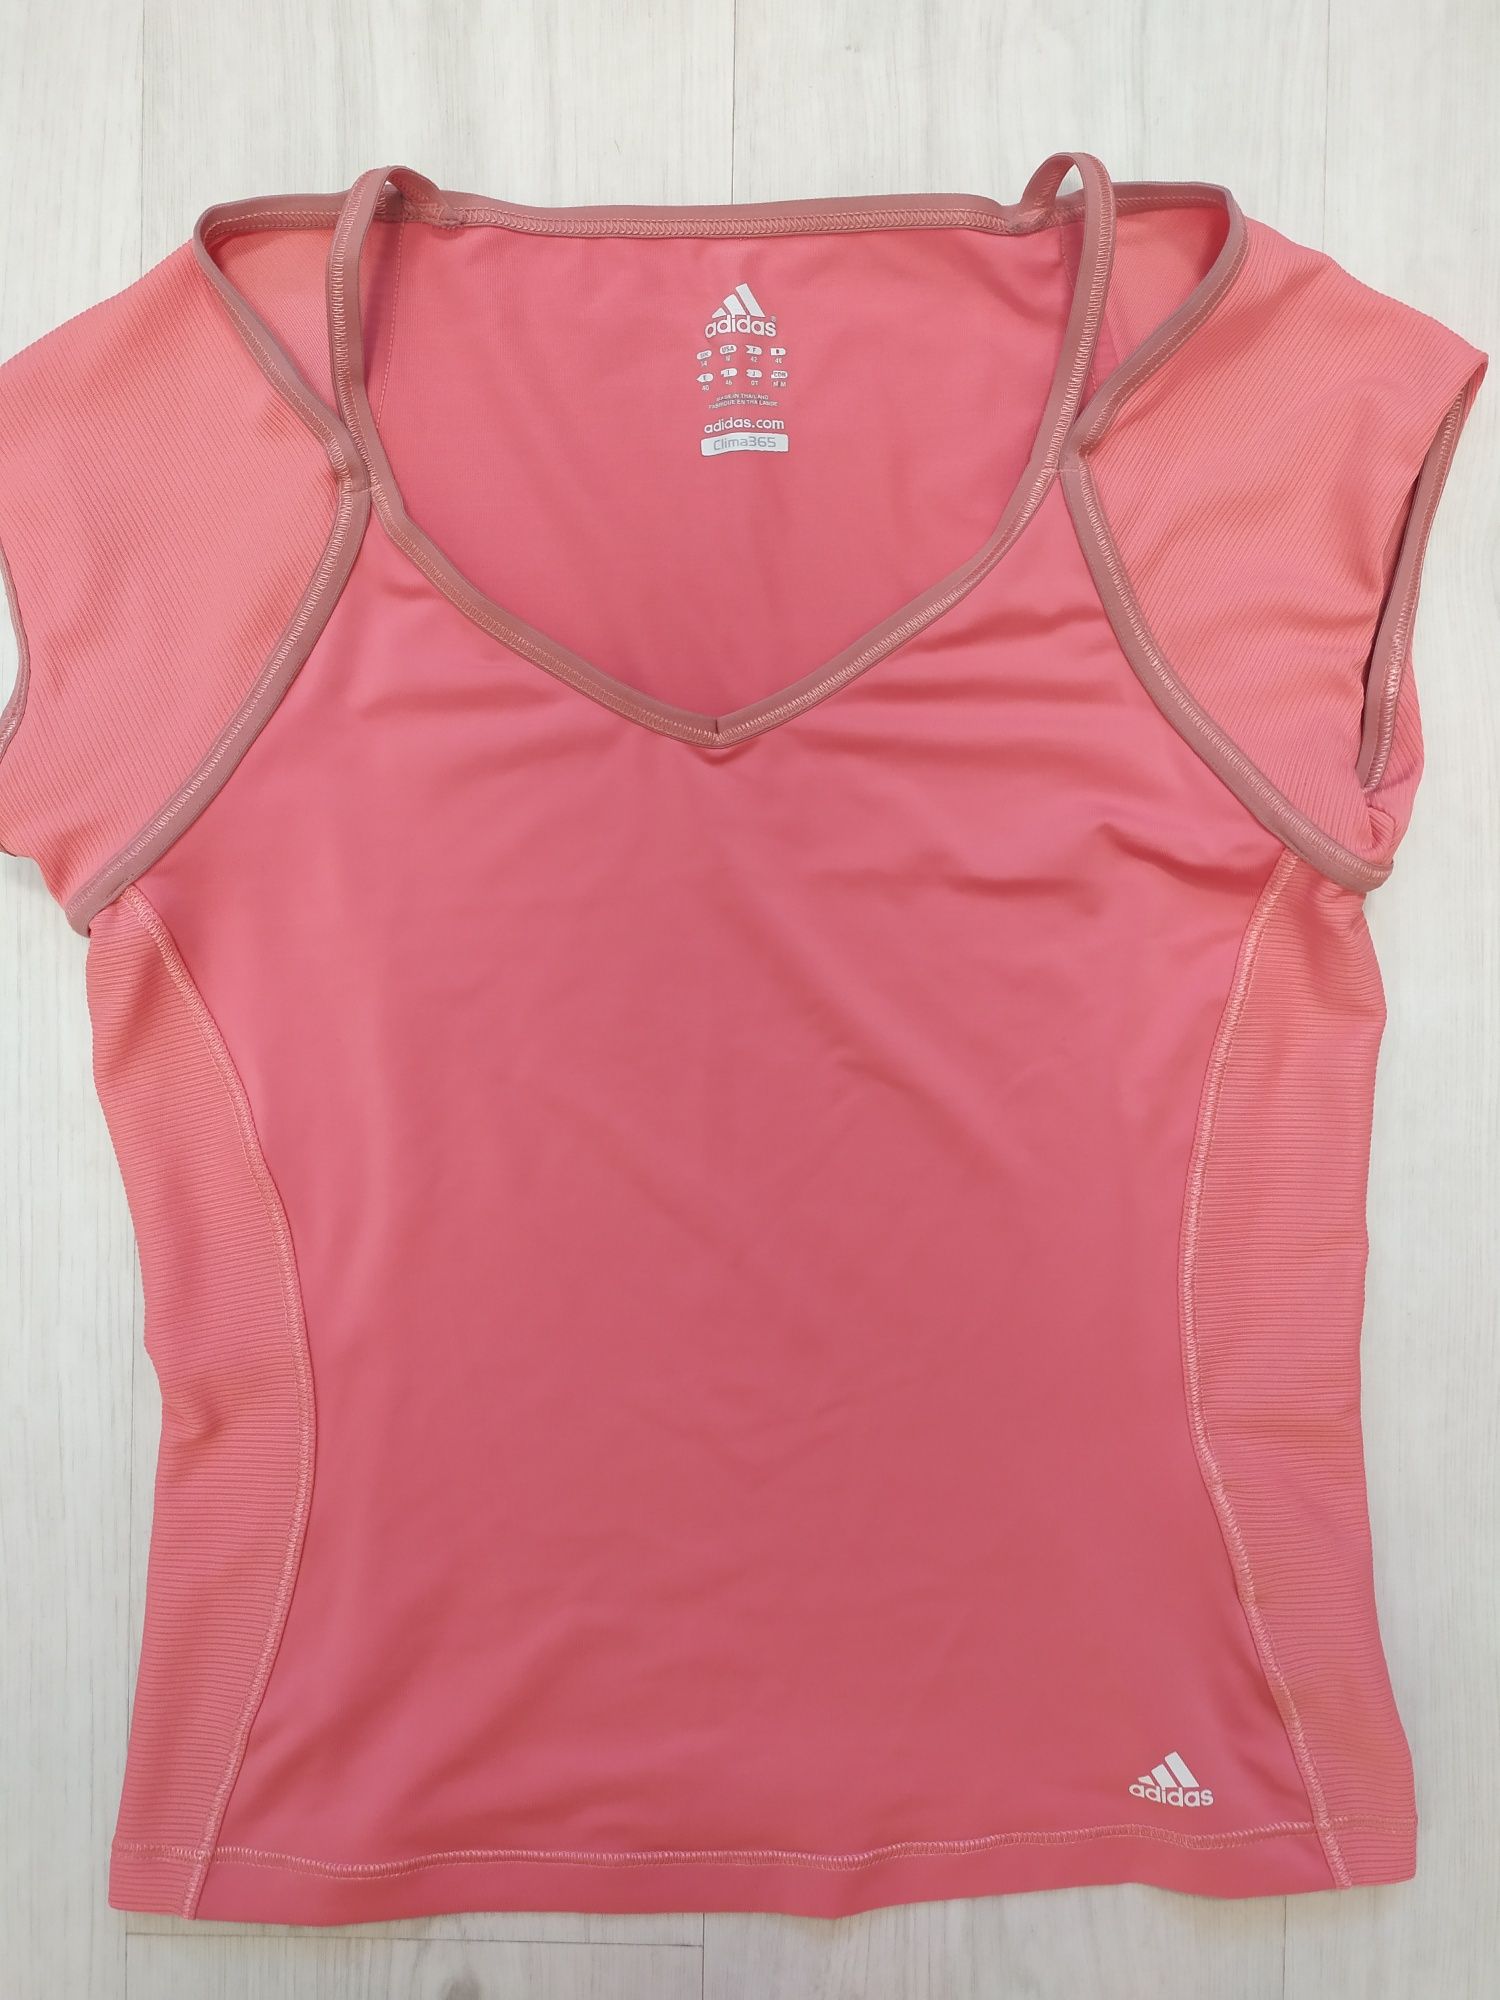 Adidas różowa koszulka sportowa t-shirt damski rozmiar M